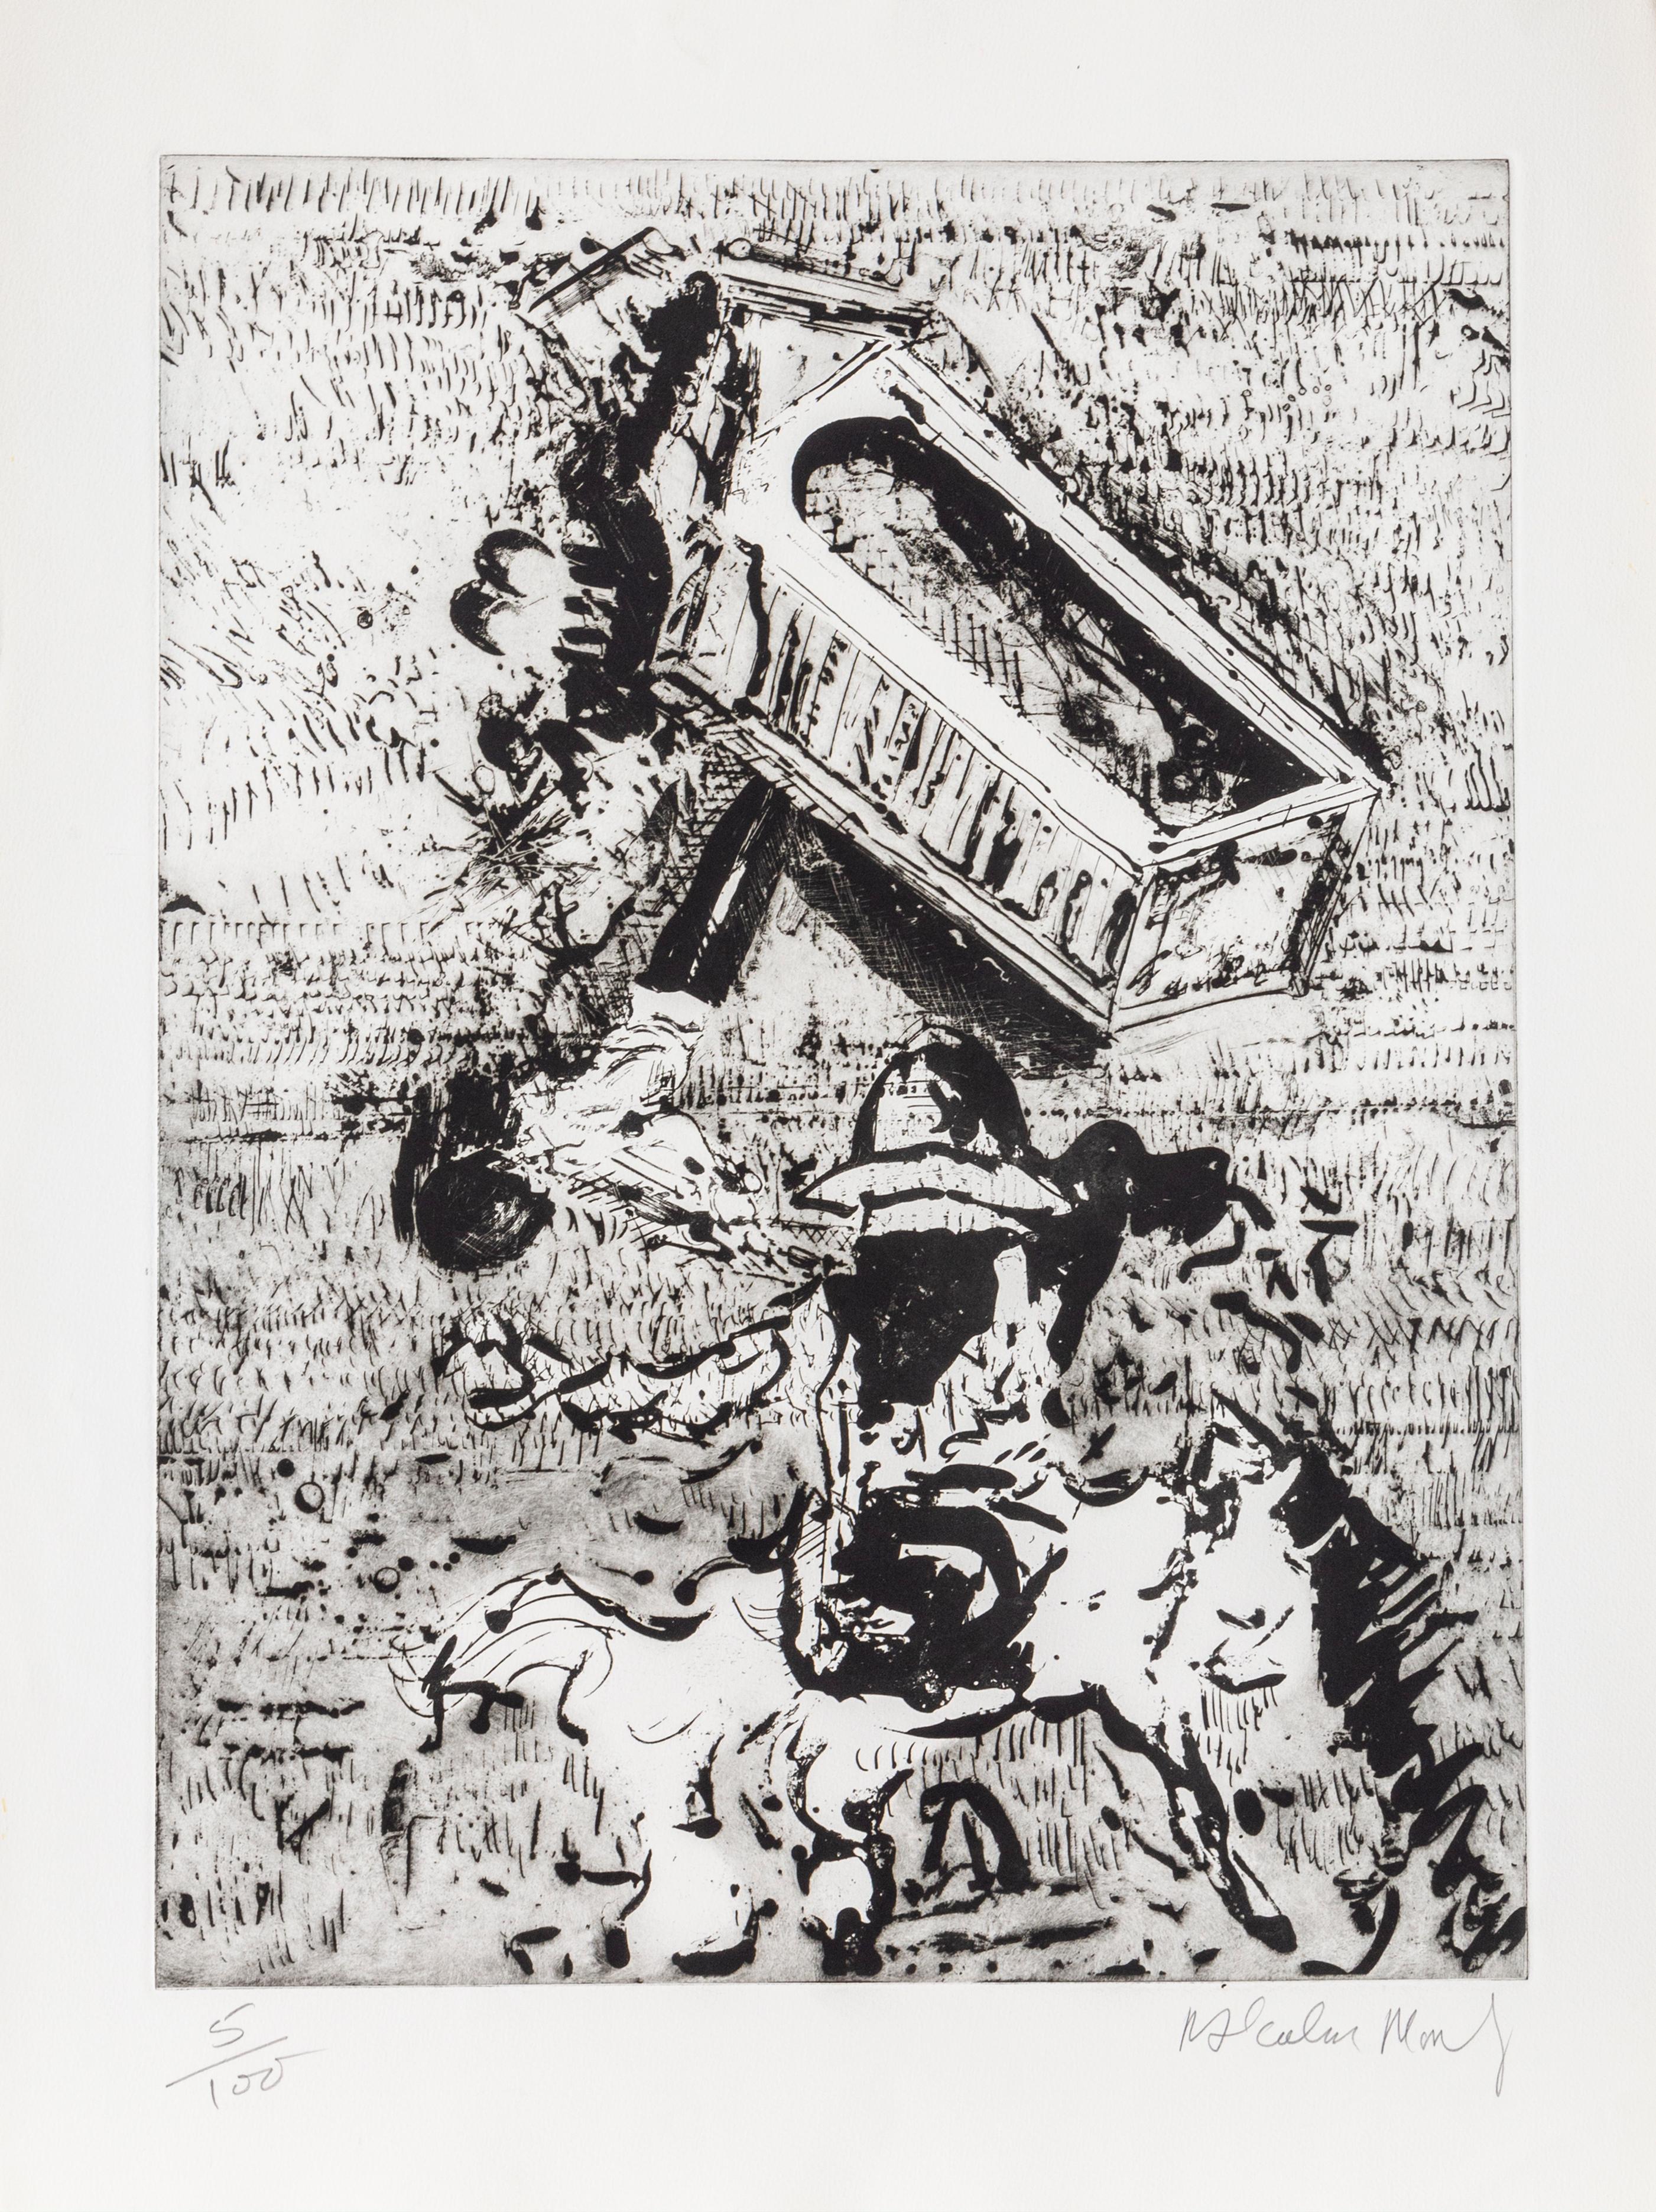 Tour et cavalier
Malcolm Morley, Britannique (1931-2018)
Date : vers 1980
Eau-forte, signée et numérotée au crayon
Edition de 100
Taille : 30 in. x 22.5 in. (76,2 cm x 57,15 cm)